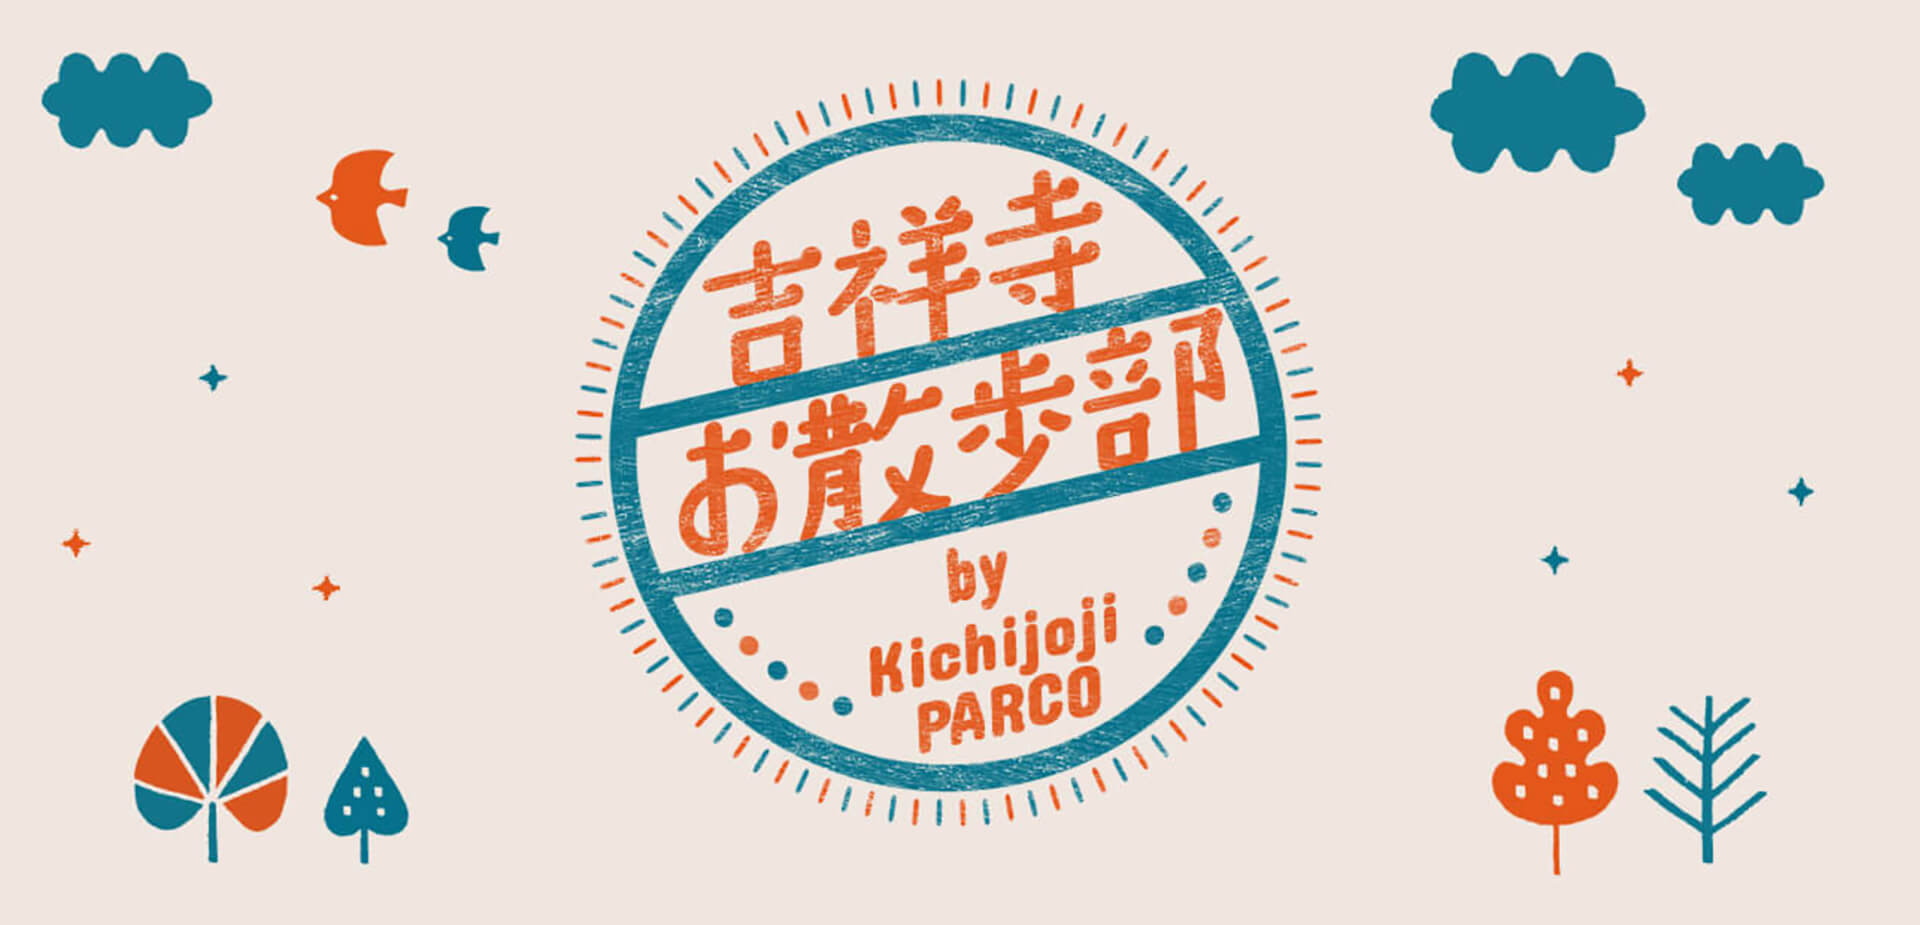 吉祥寺お散歩スタンプラリー by Kichijoji PARCO